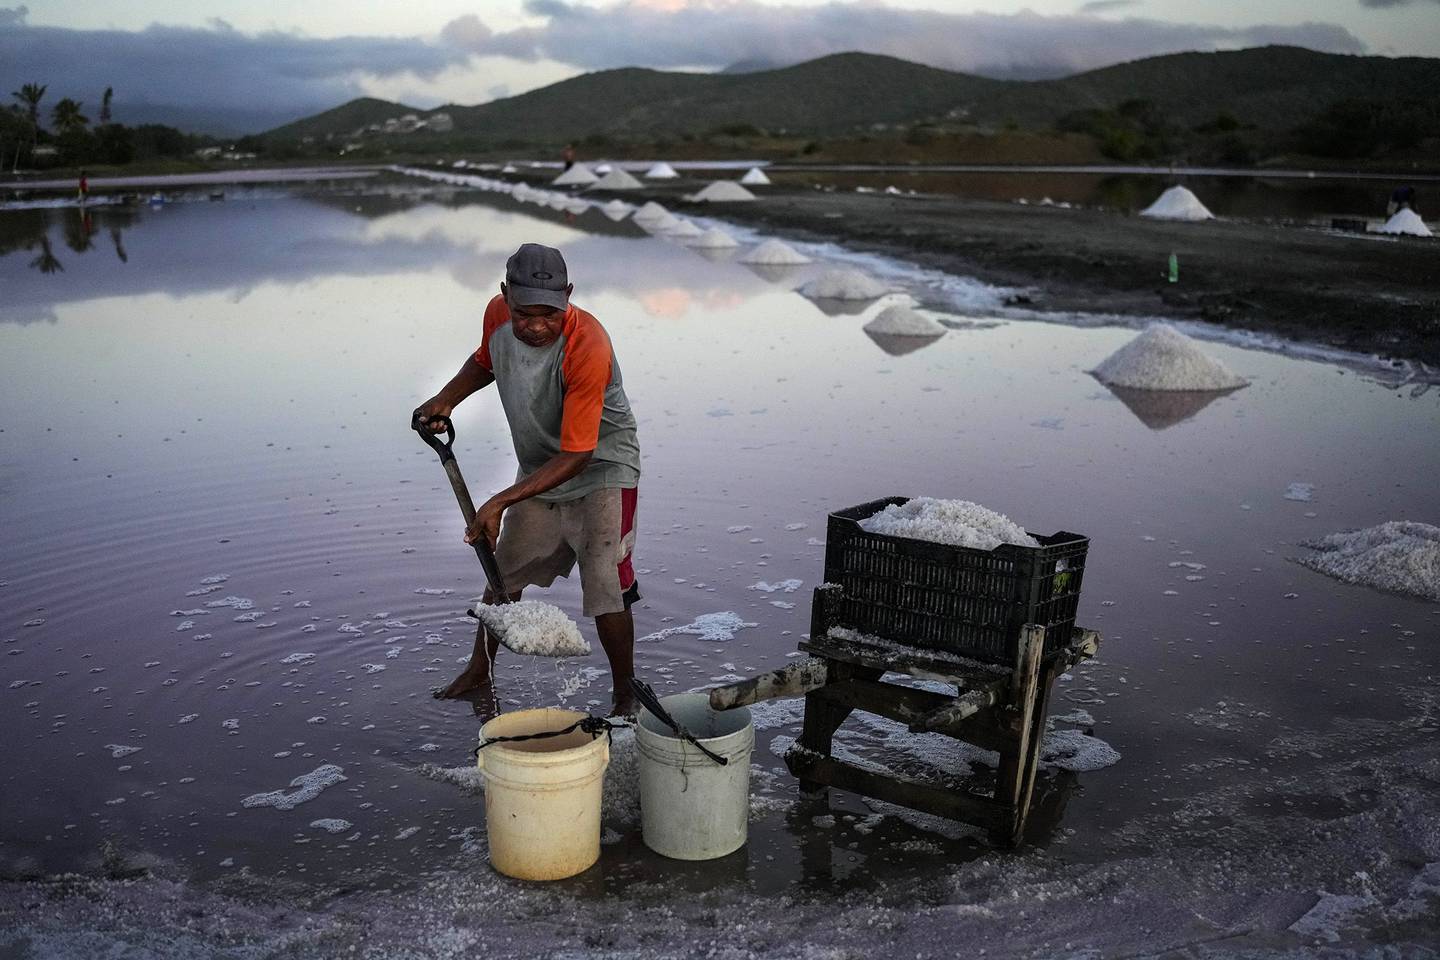 Gutiérrez palea sal todas las mañanas. Puede ganar más de 500 dólares vendiendo la sal, más de lo que ha ganado en sus anteriores empleos. Fotógrafo: Matias Delacroix/Bloomberg